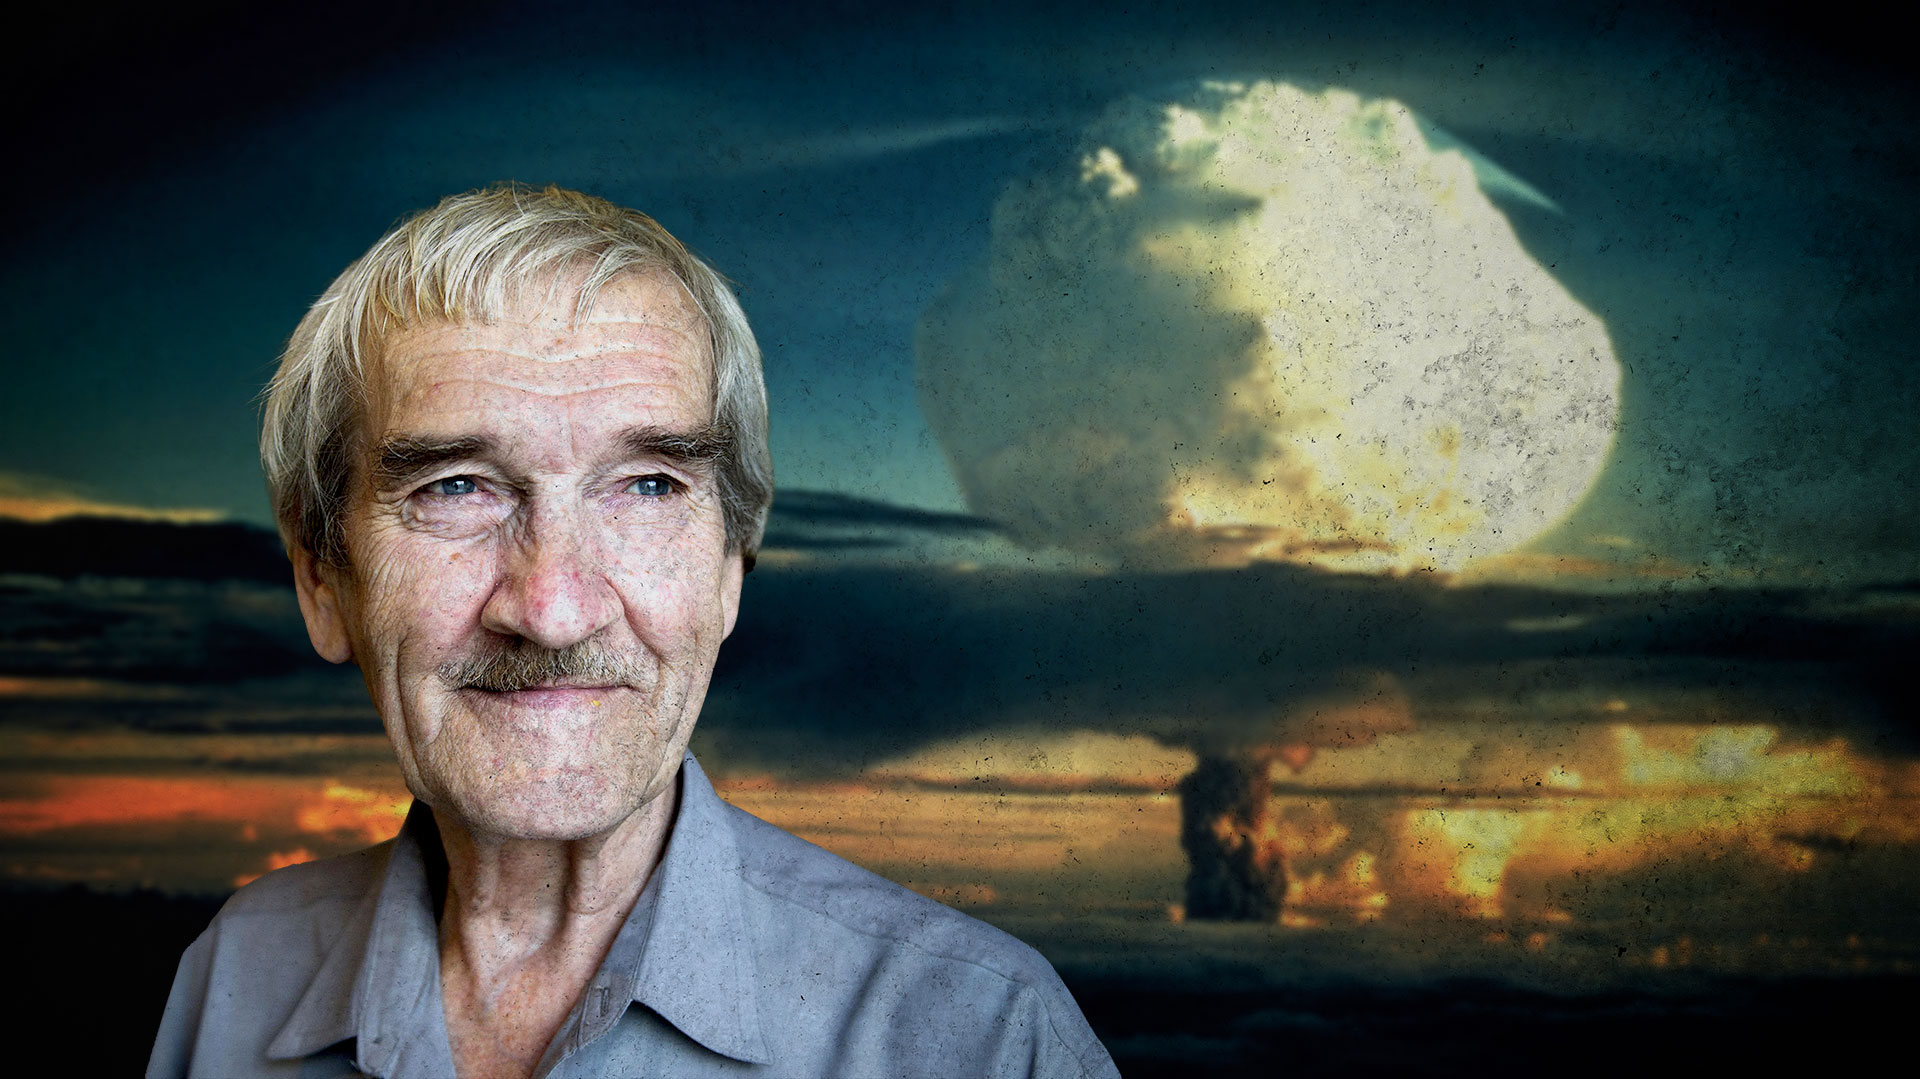 23 minutos para el fin del mundo: alarma de misiles y el oficial que evitó una guerra nuclear